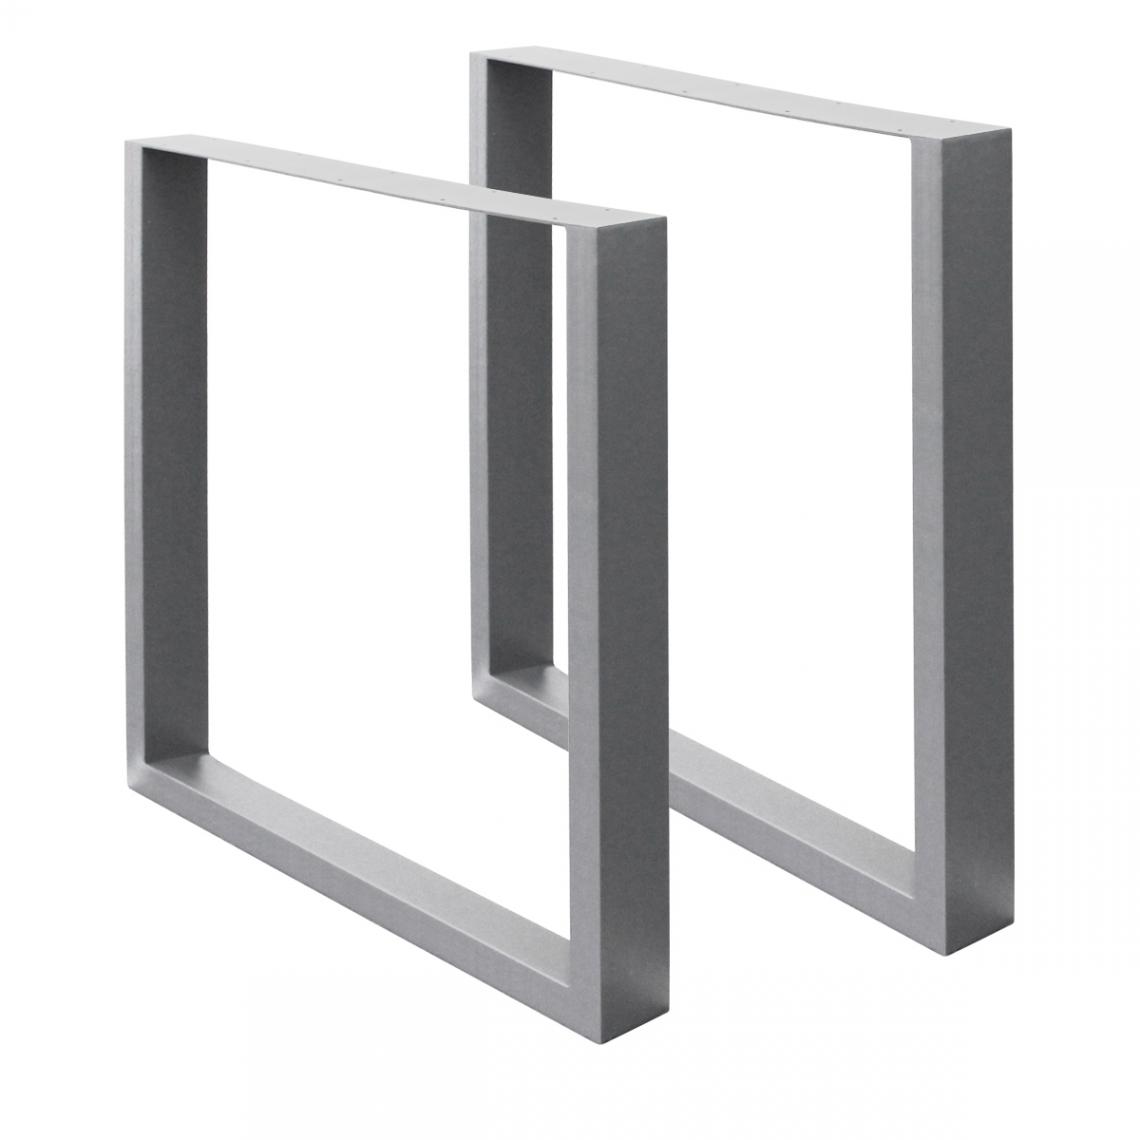 Ecd Germany - 2x Pieds de table acier 60 x 72 cm gris châssis support de table rectangulaire - Pieds & roulettes pour meuble